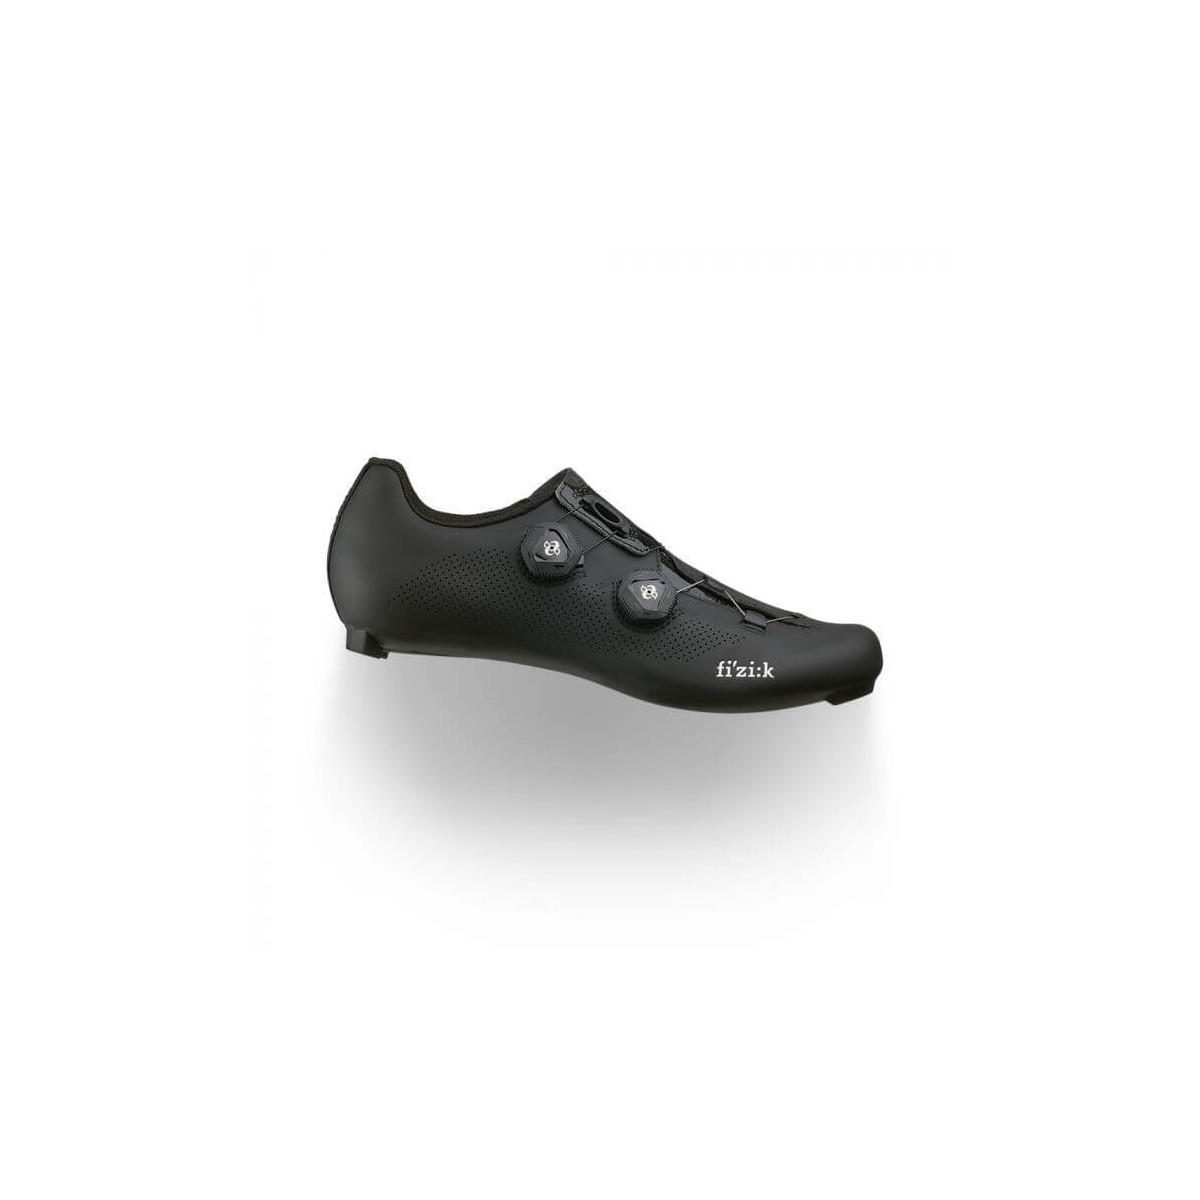 Fizik Aria R3 Black Shoes, Size 44 - EUR